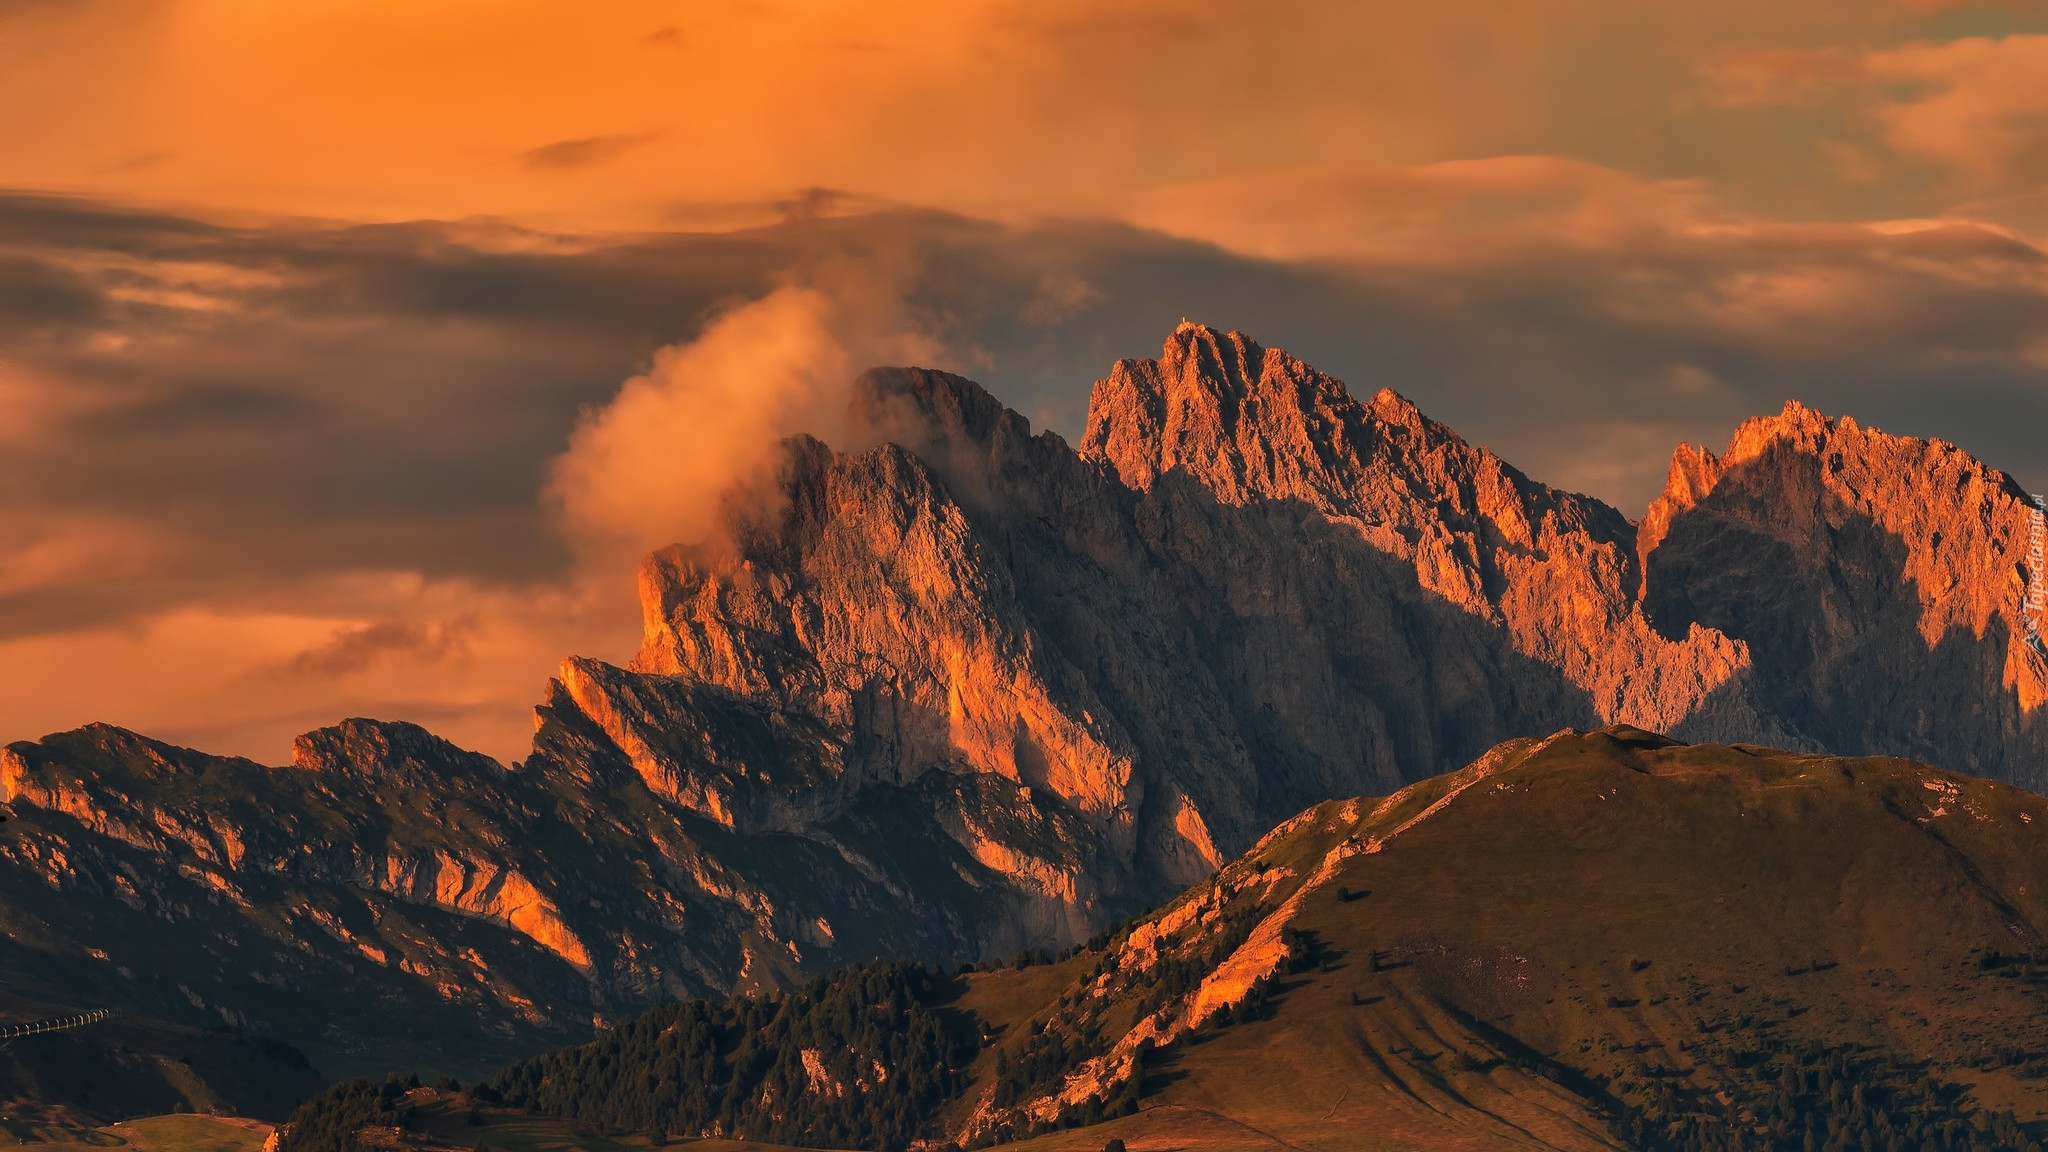 Góry, Alpy, Dolomity, Góra Seceda, Włochy